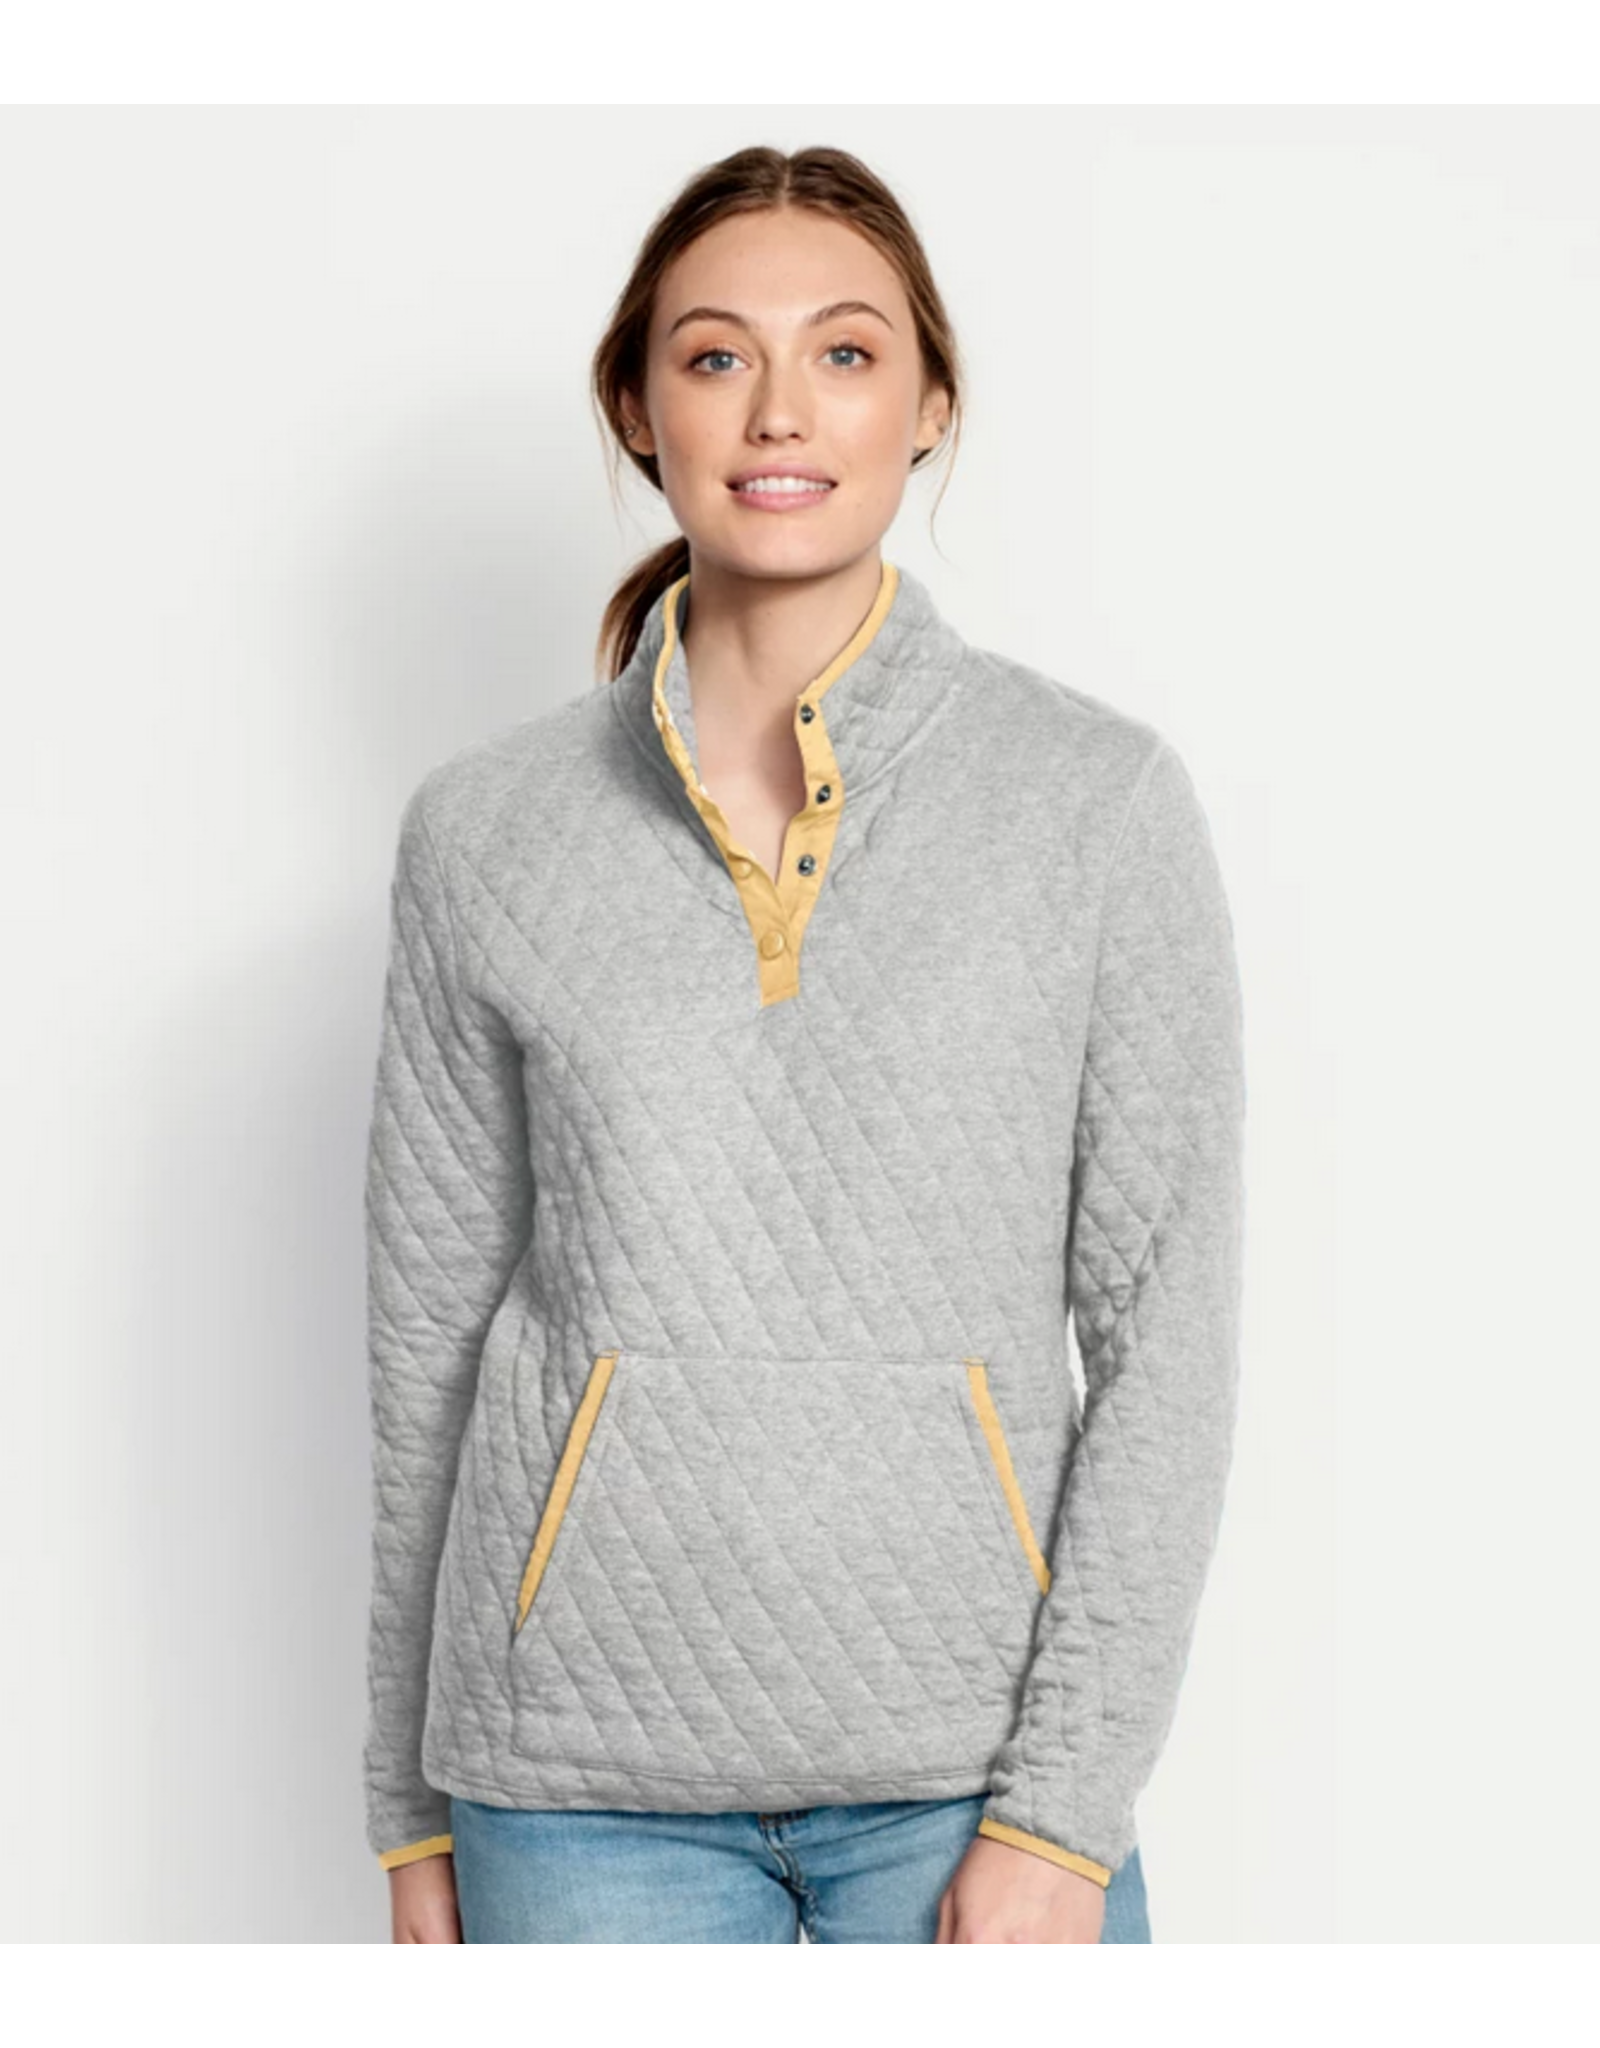 Orvis Women’s Outdoor Quilted Snap Sweatshirt (Oatmeal)